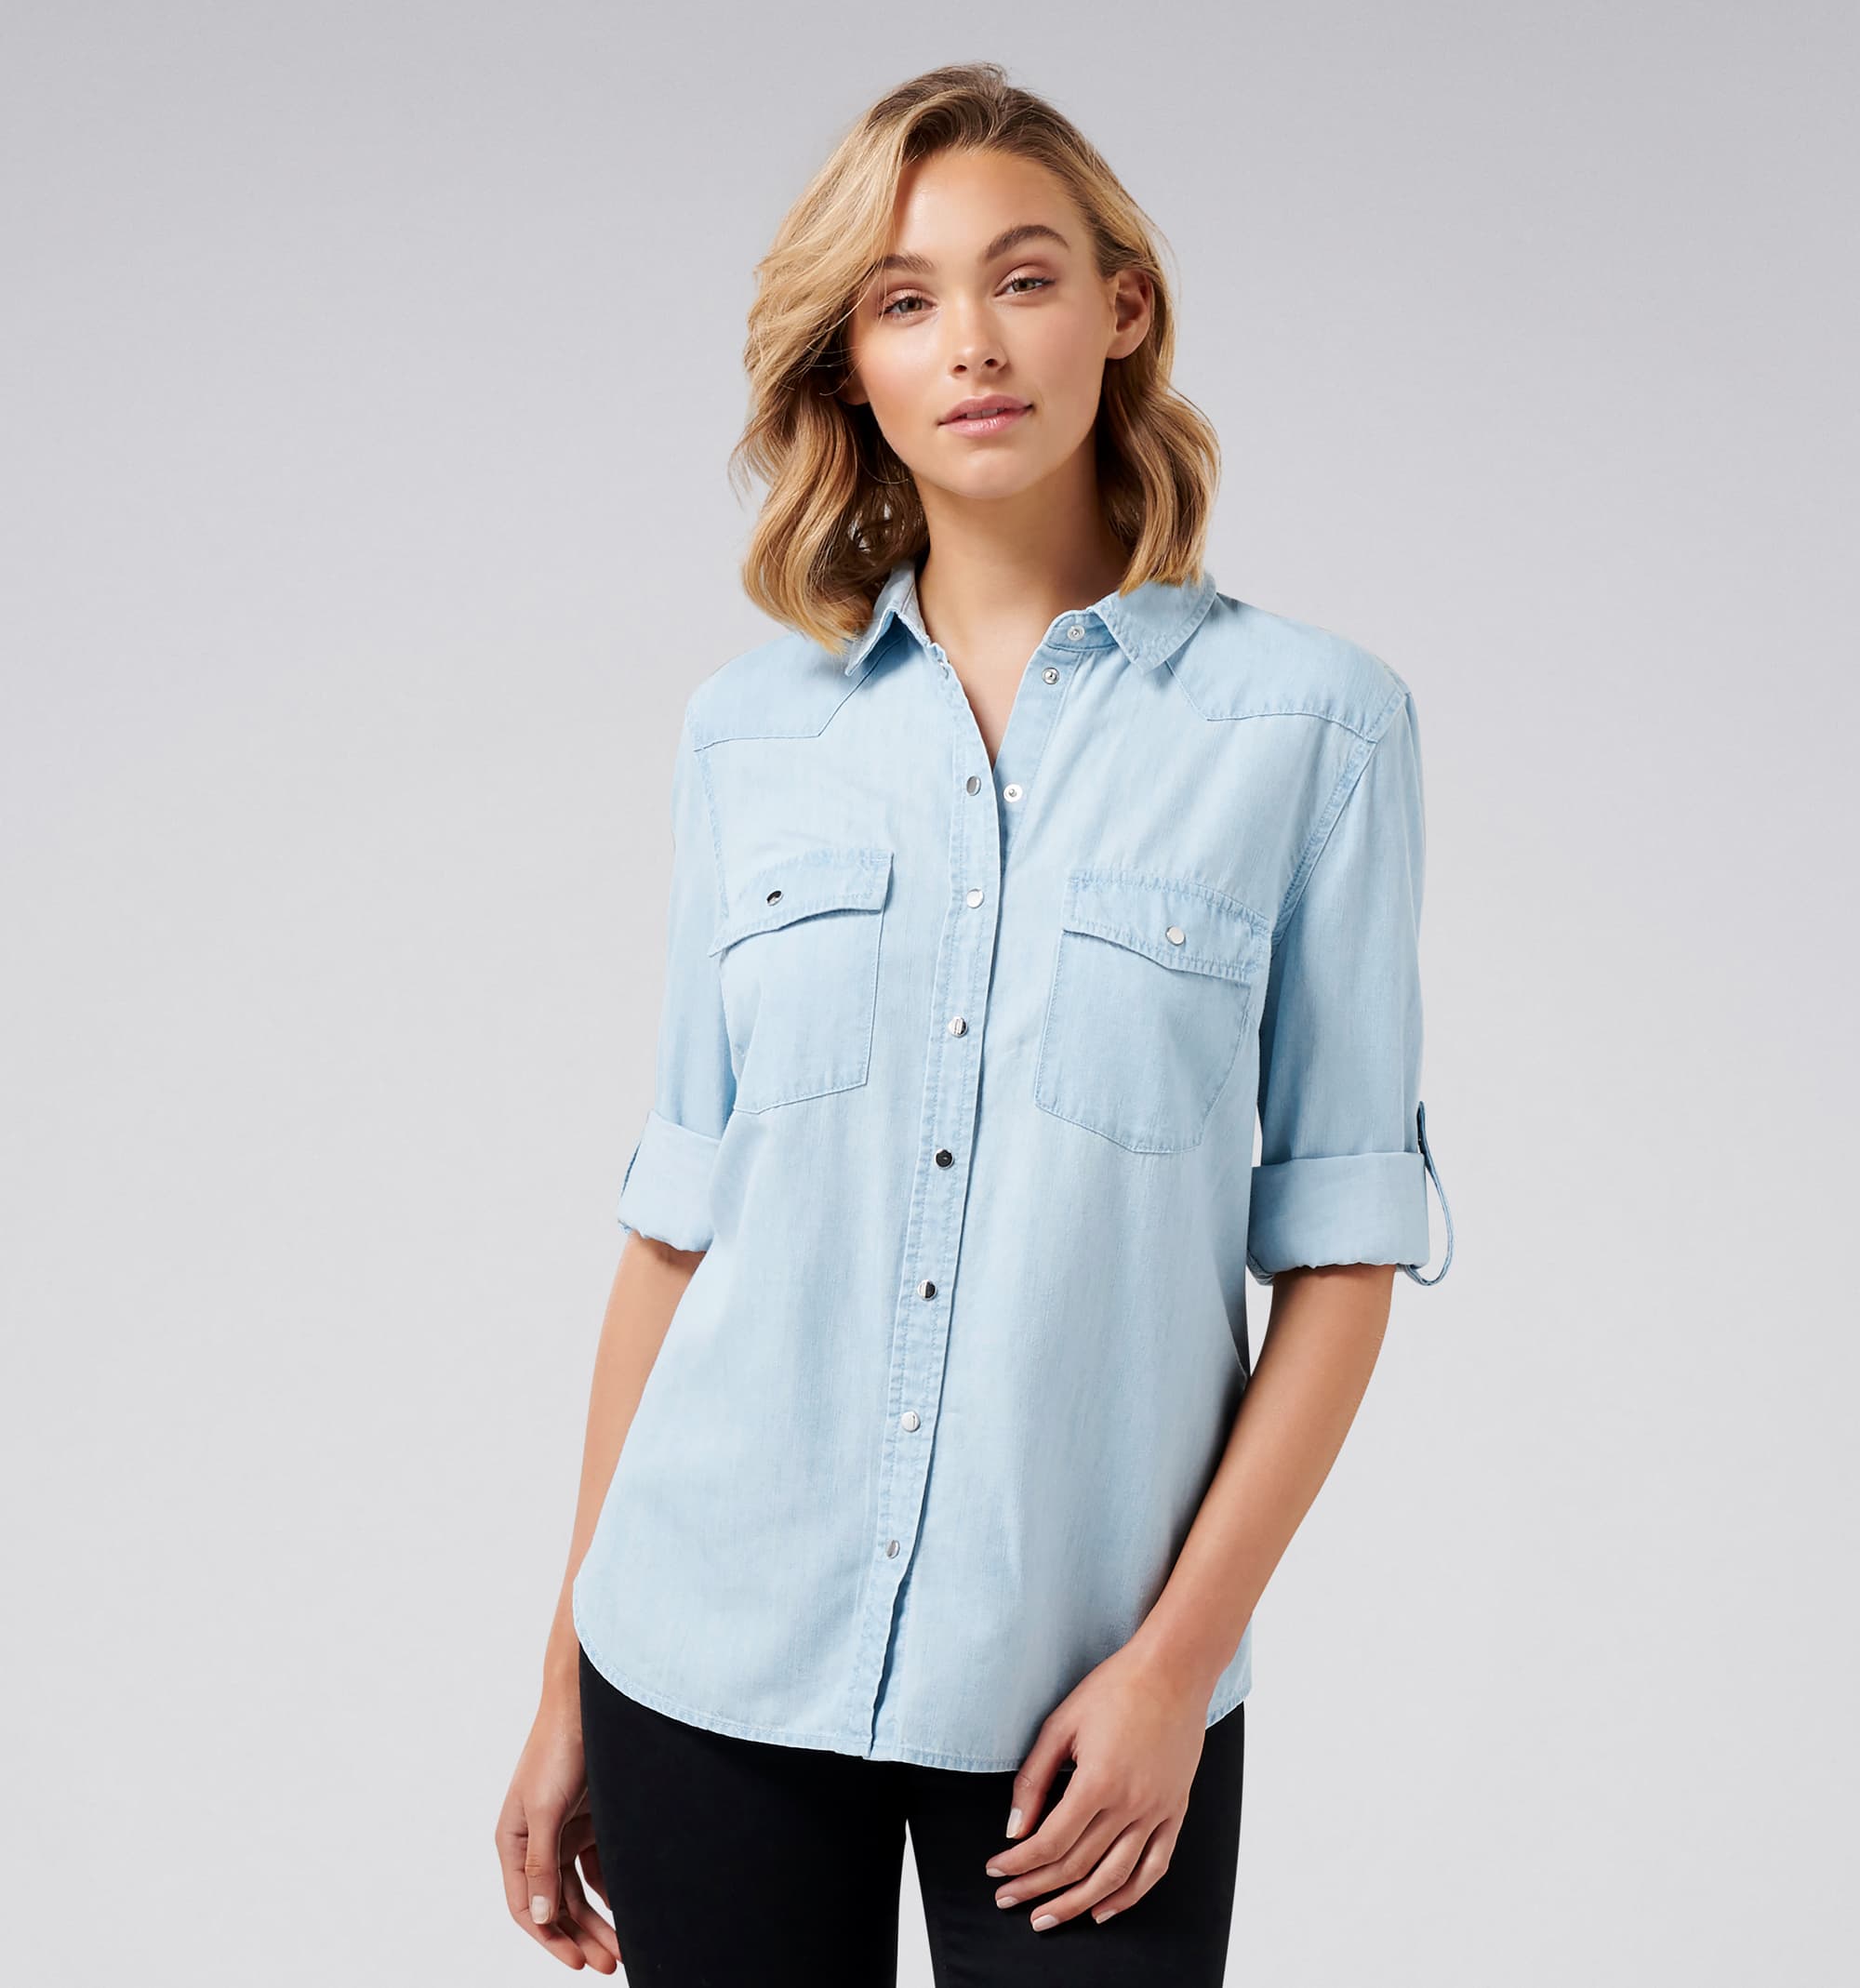 Light Blue Chambray Shirt - Long Sleeve Shirt - Button-Up Top - Lulus